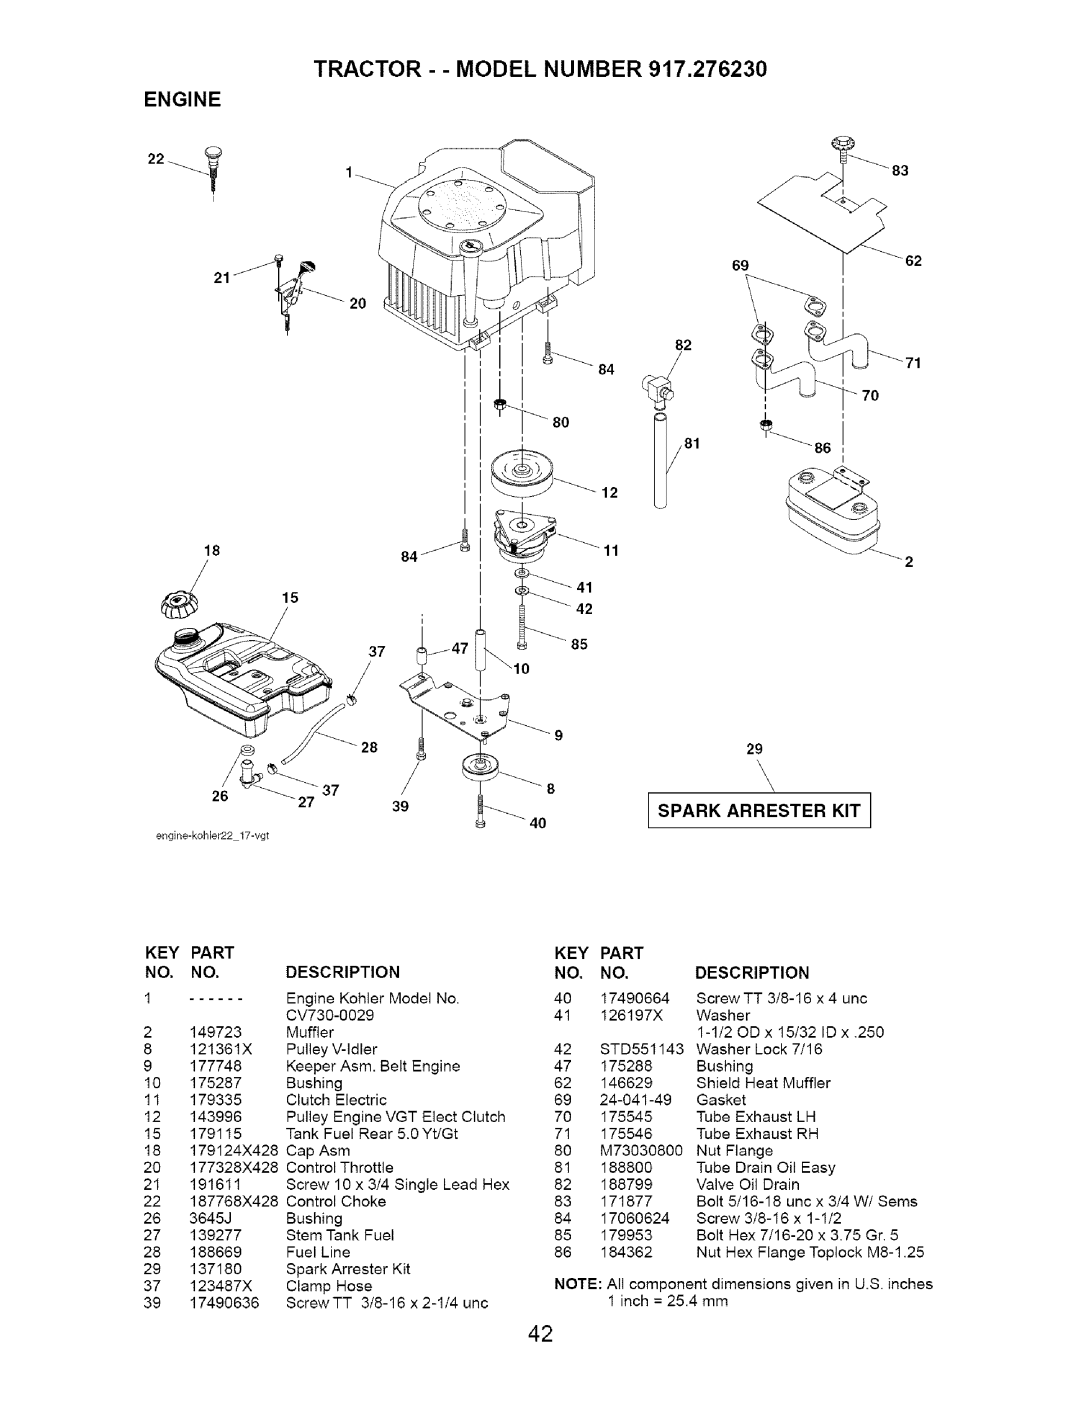 Craftsman 917.27623 owner manual TRACTOR - - MODEL NUMBER 917,276230, Engine, Part, Description 